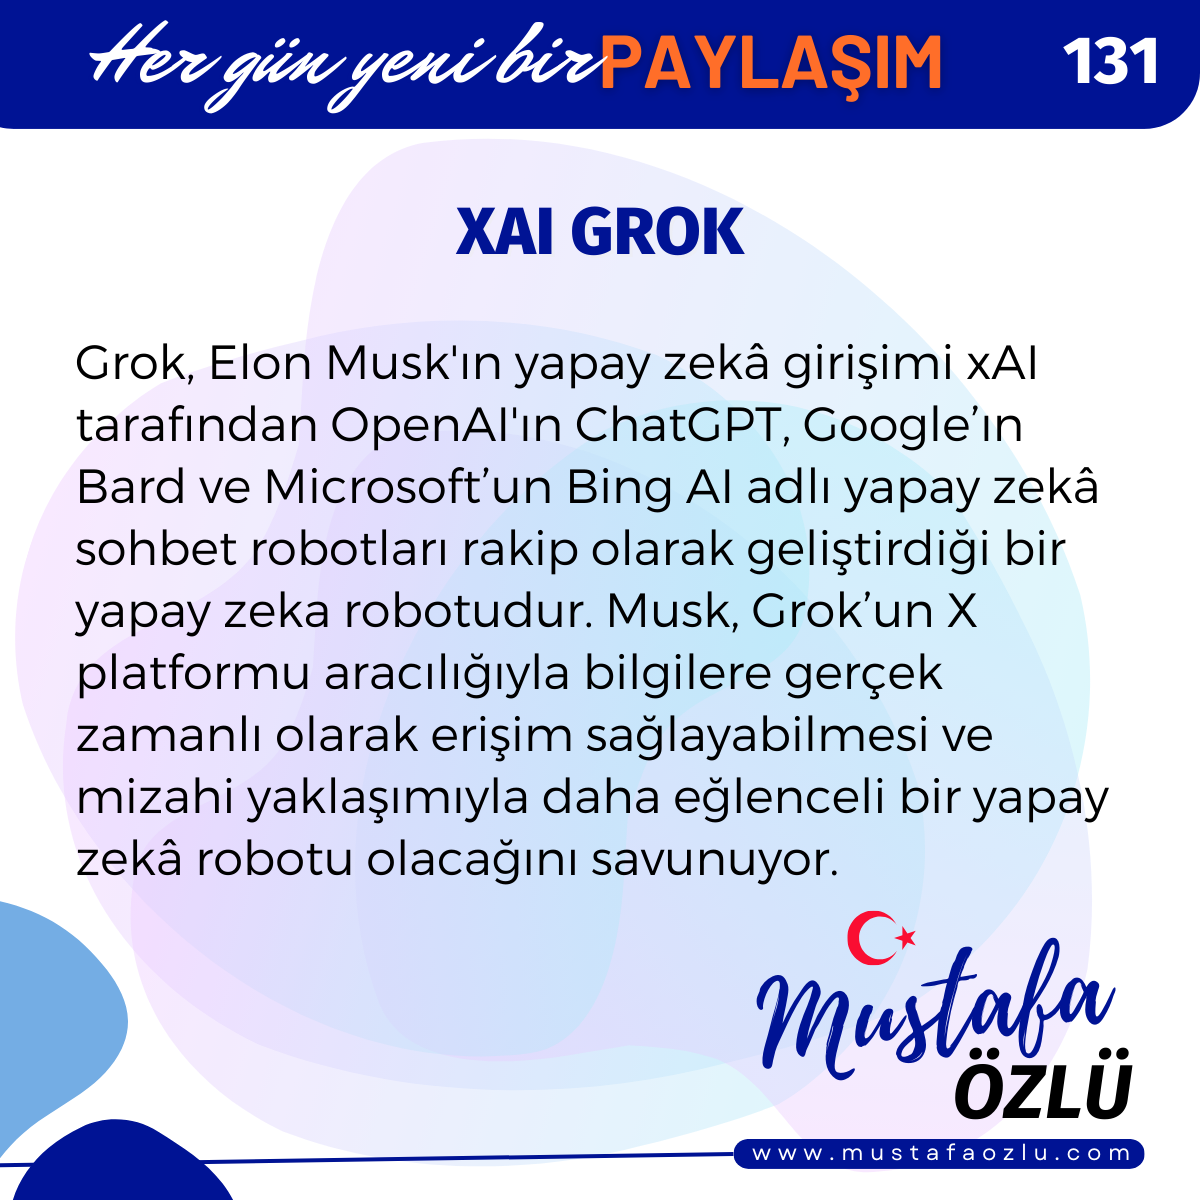 xAI Grok - Mustafa ÖZLÜ